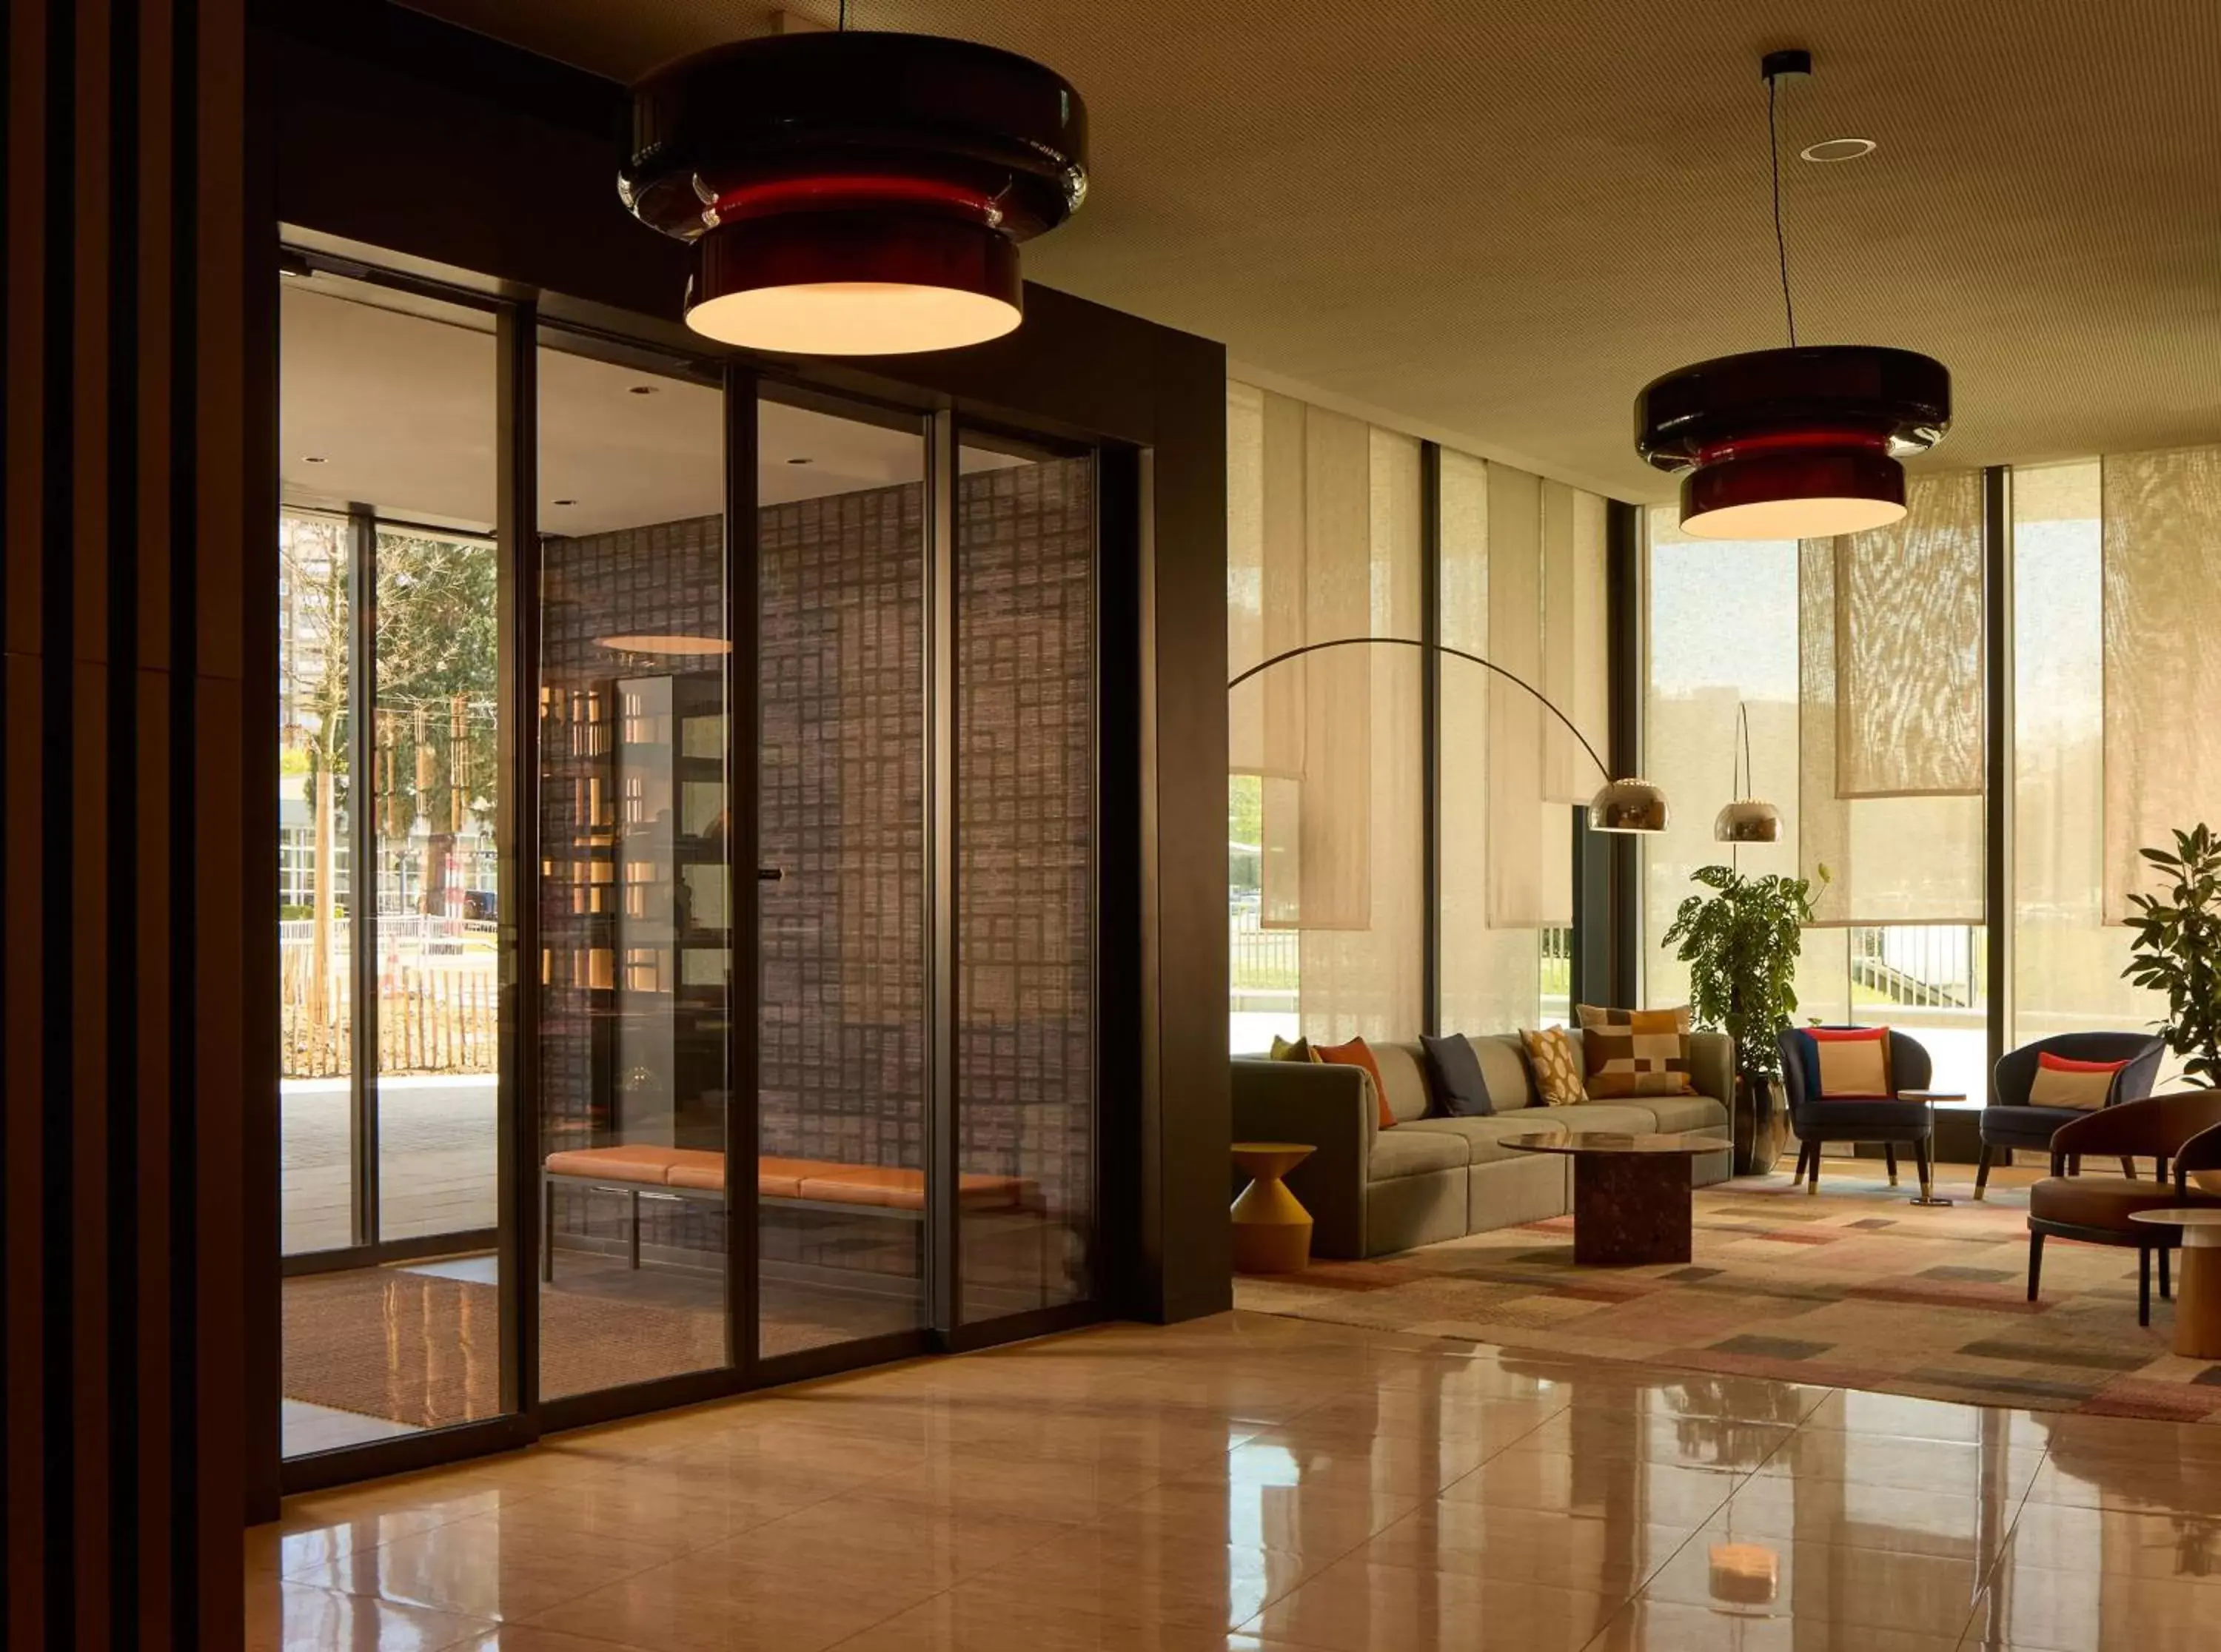 Lobby or reception in Adina Apartment Hotel Geneva